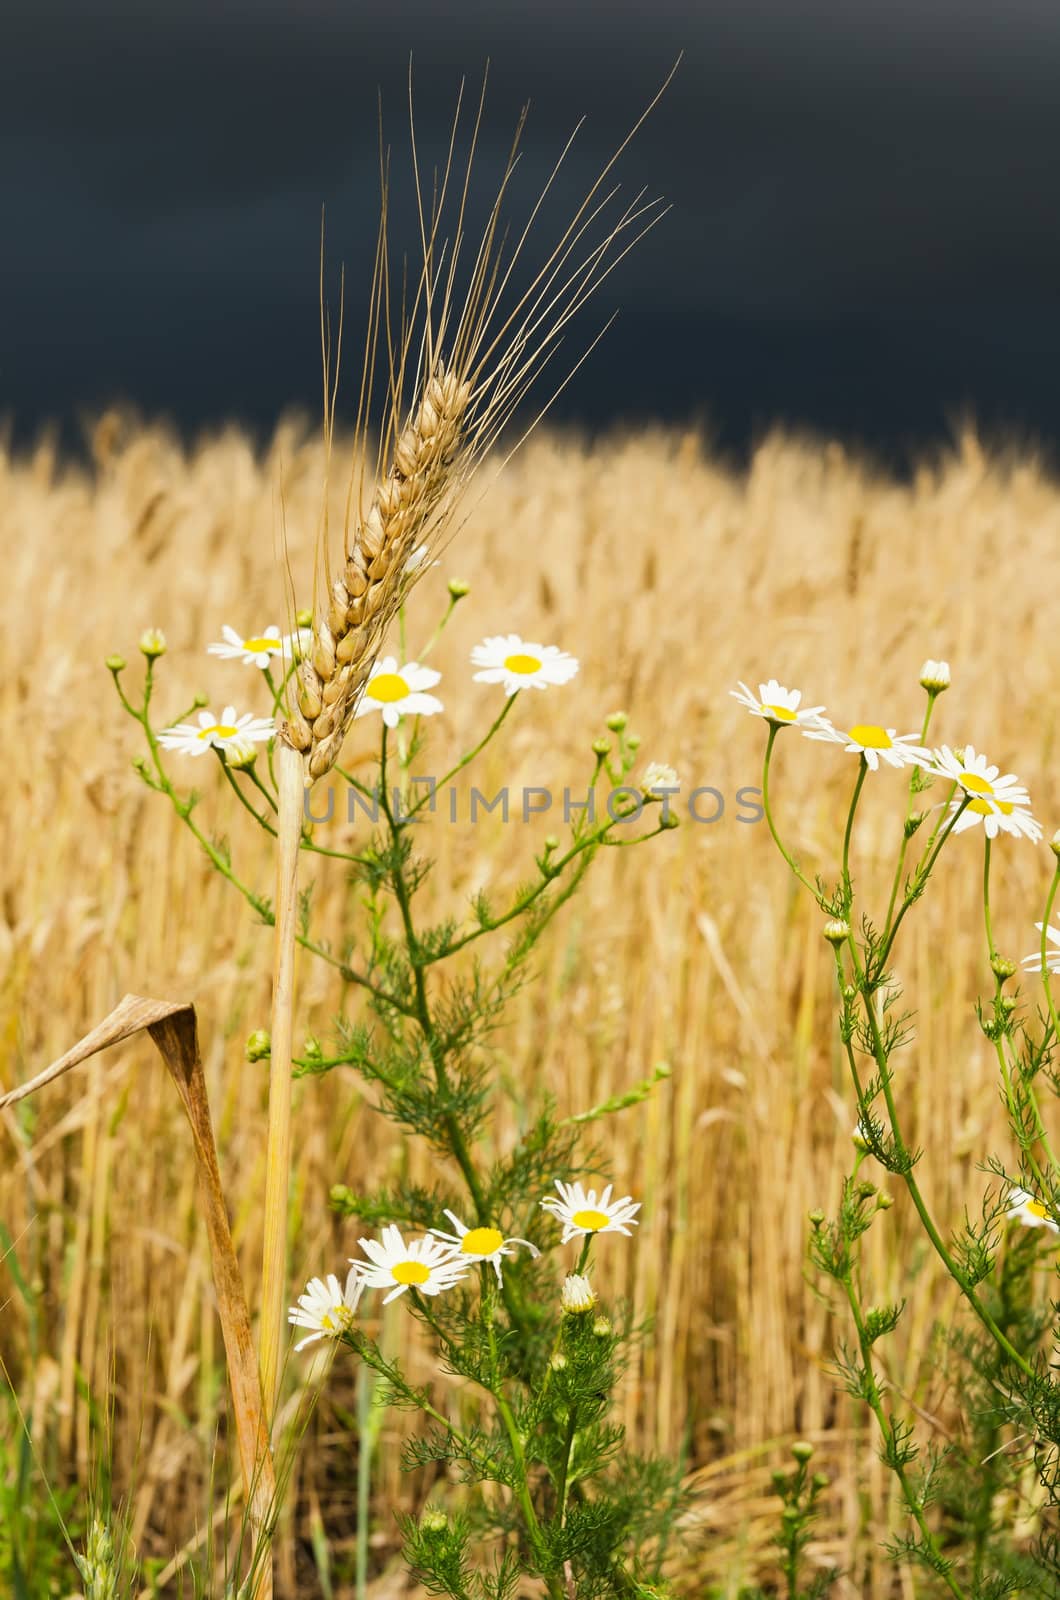 golden ear of wheat with daisy under dark sky by mycola